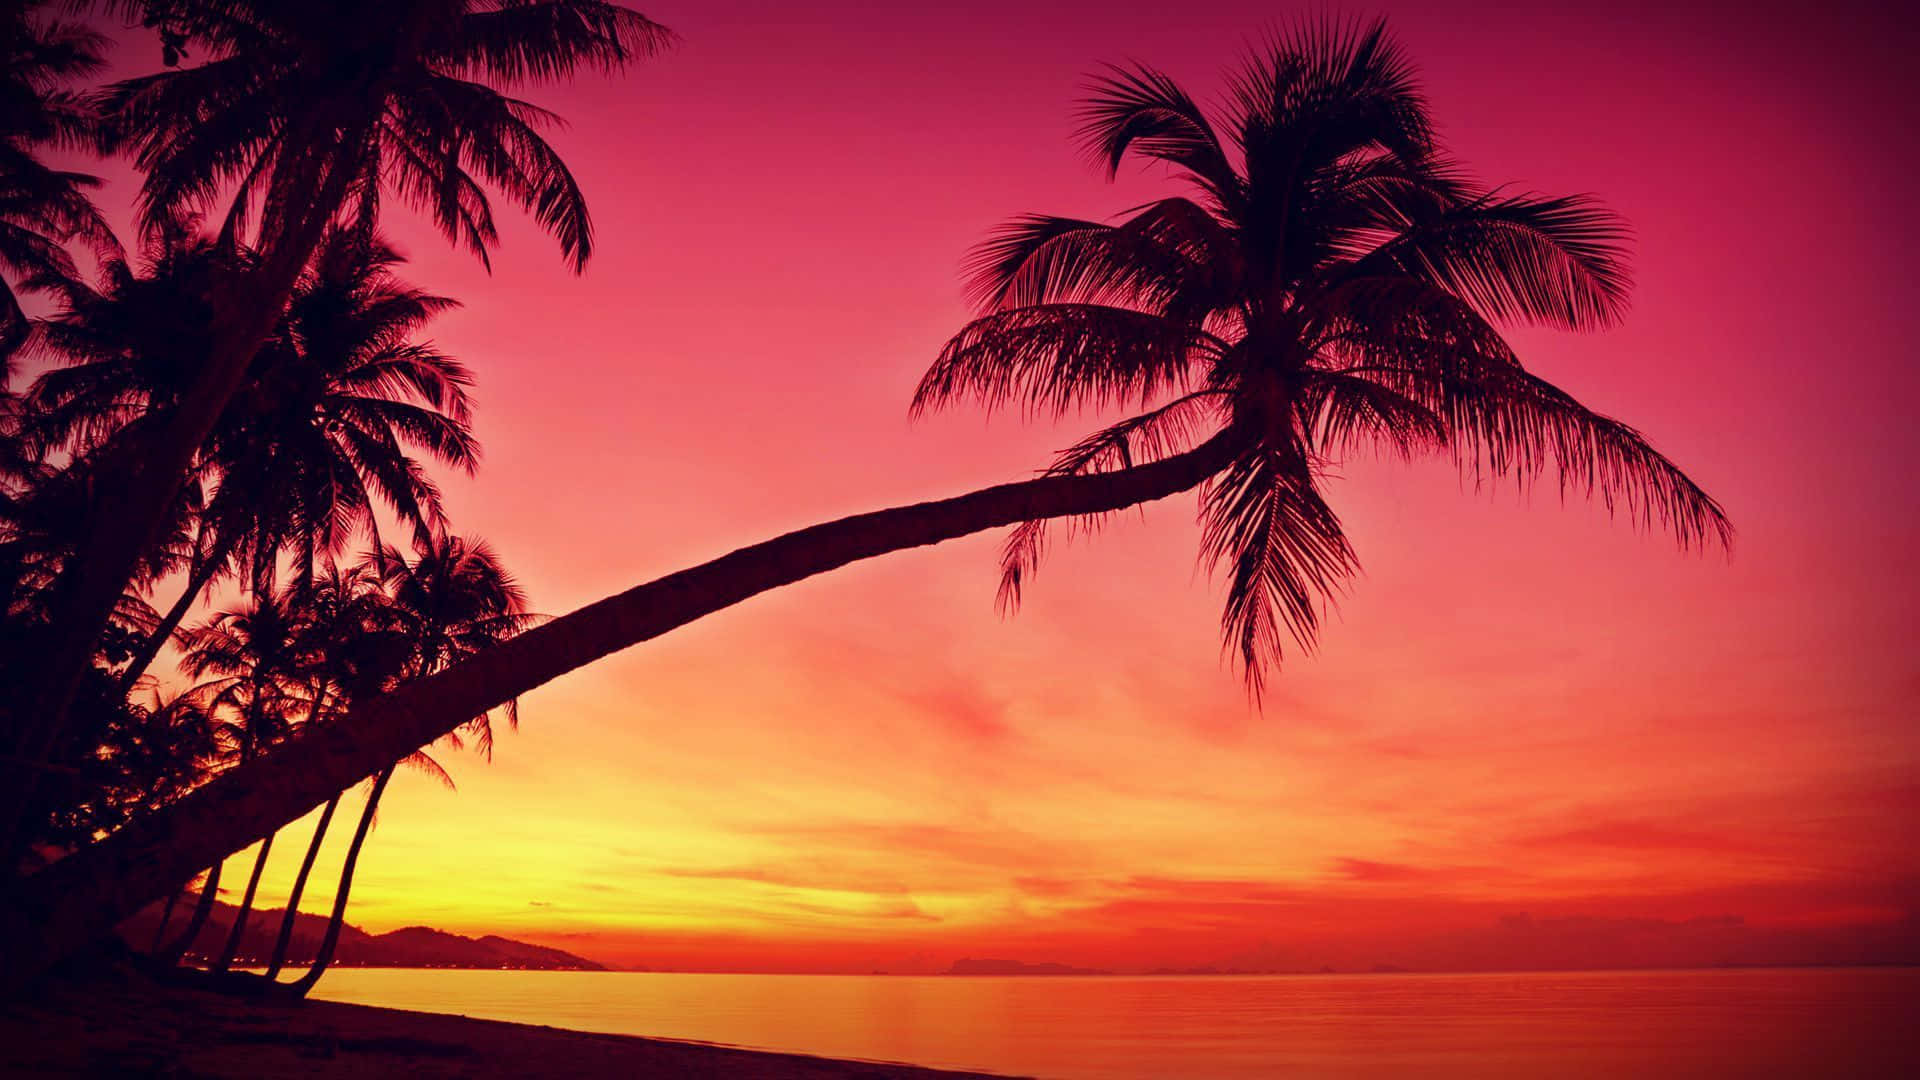 Free Beach Sunset Desktop Wallpaper Downloads, [100+] Beach Sunset Desktop  Wallpapers for FREE 